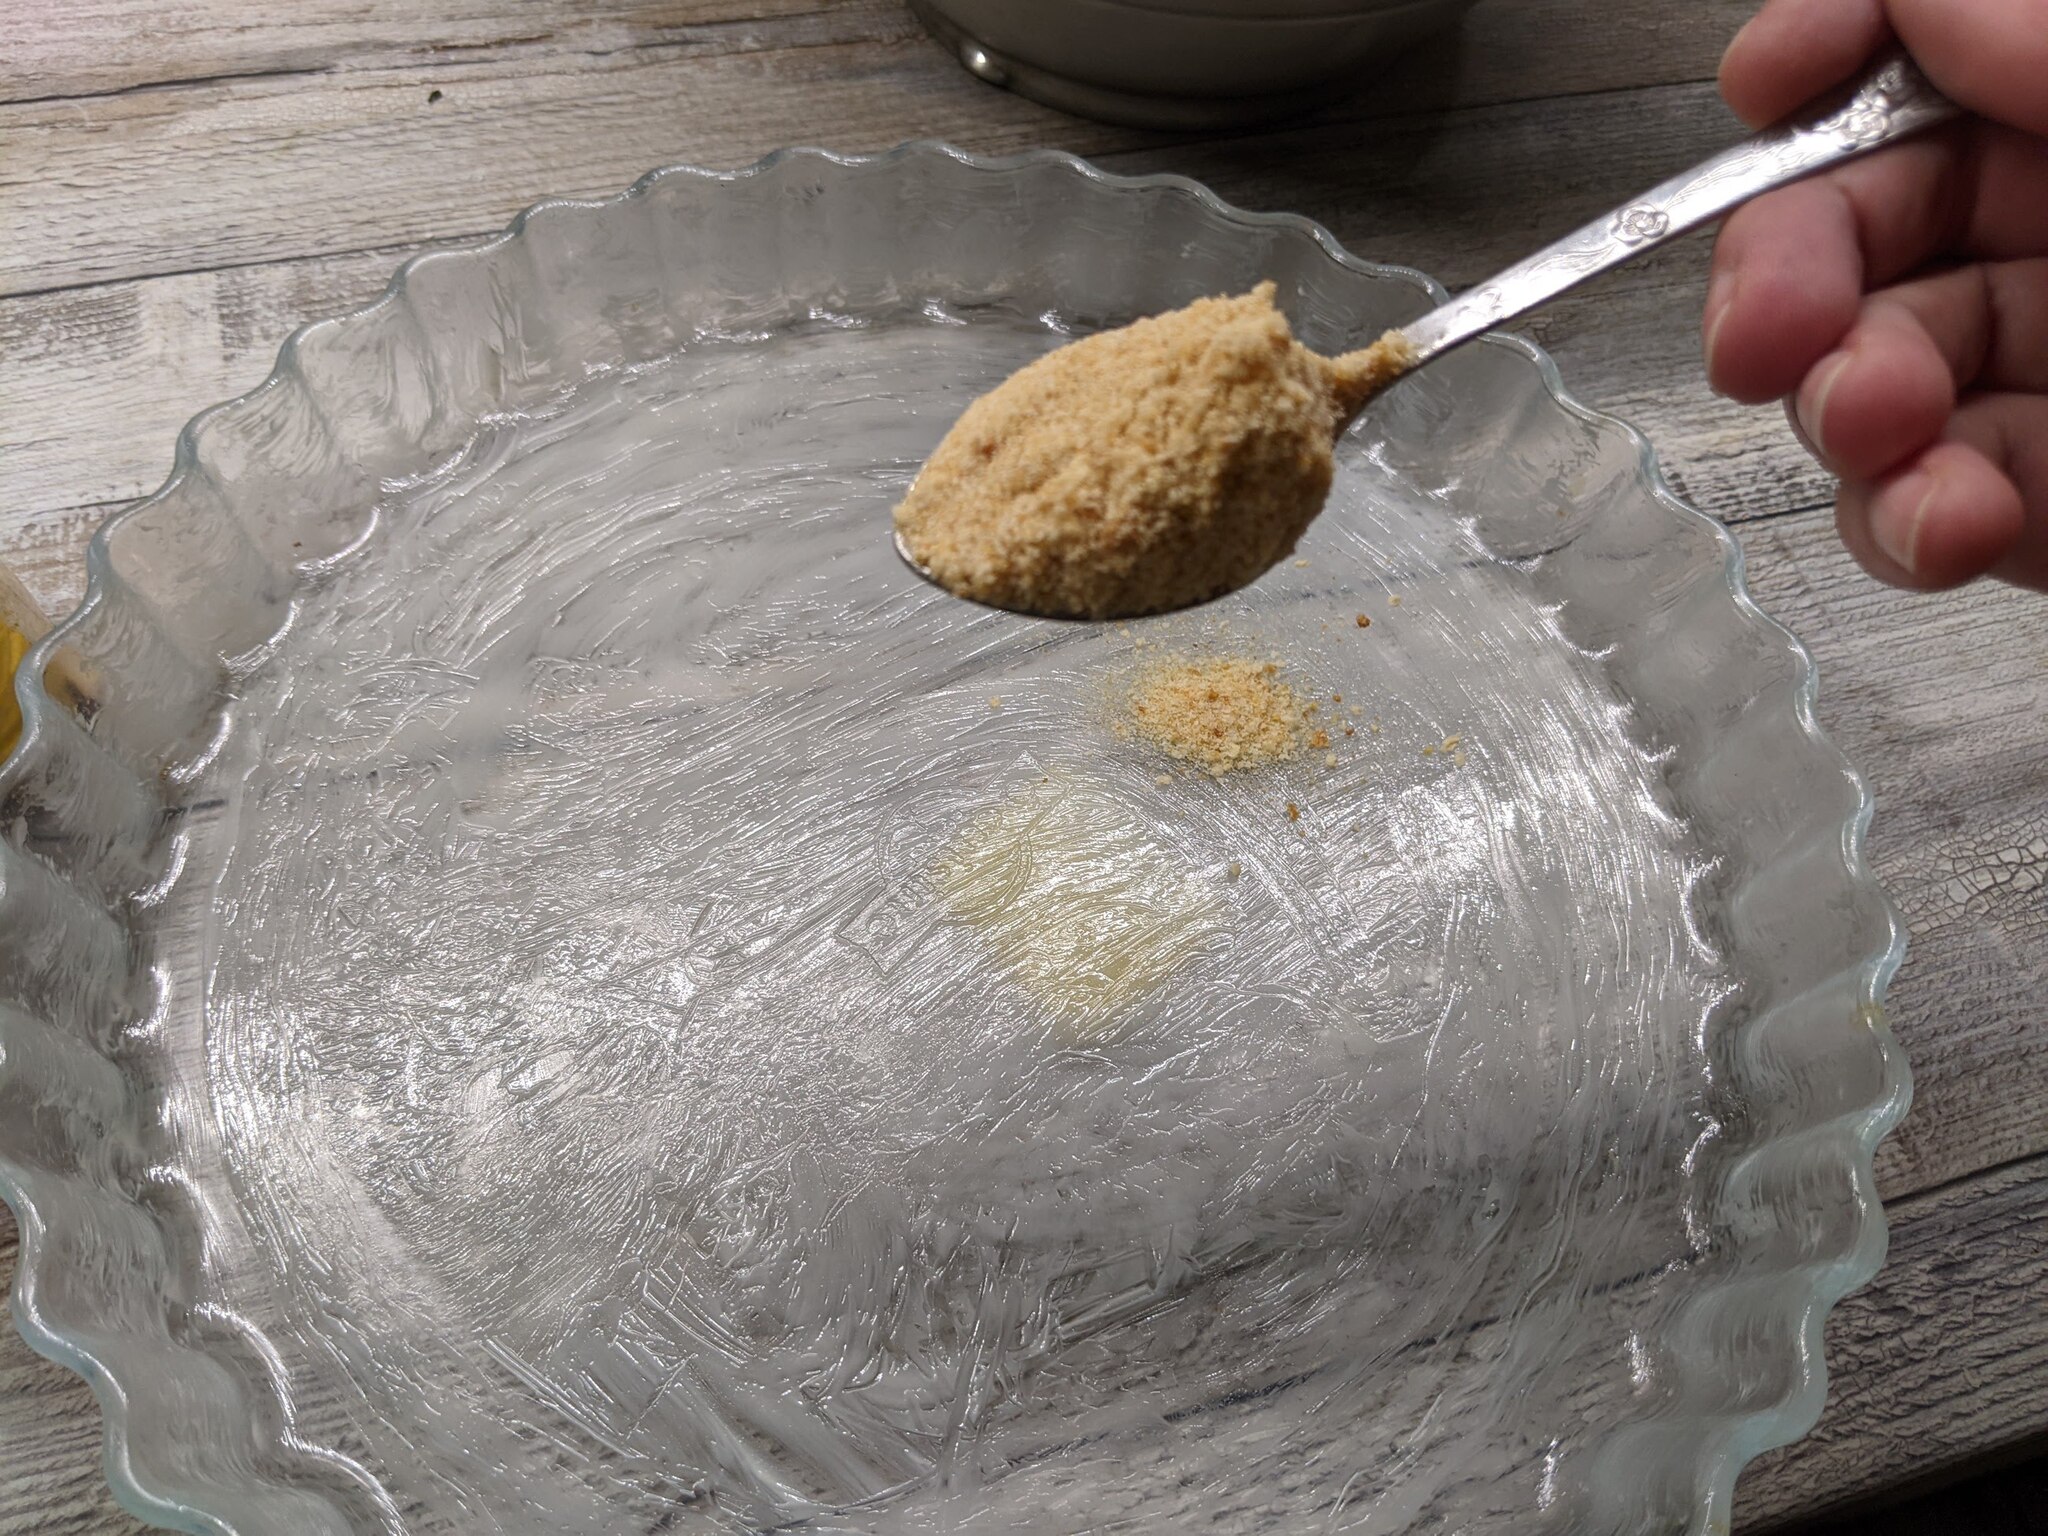 Творожный пирог с вишней - но без муки можно, творог, тесто, очень, просто, формы, совсем, может, пирог, такой, немного, такого, важно, похожее, граммов, сливки, получим, легко, потом, будет